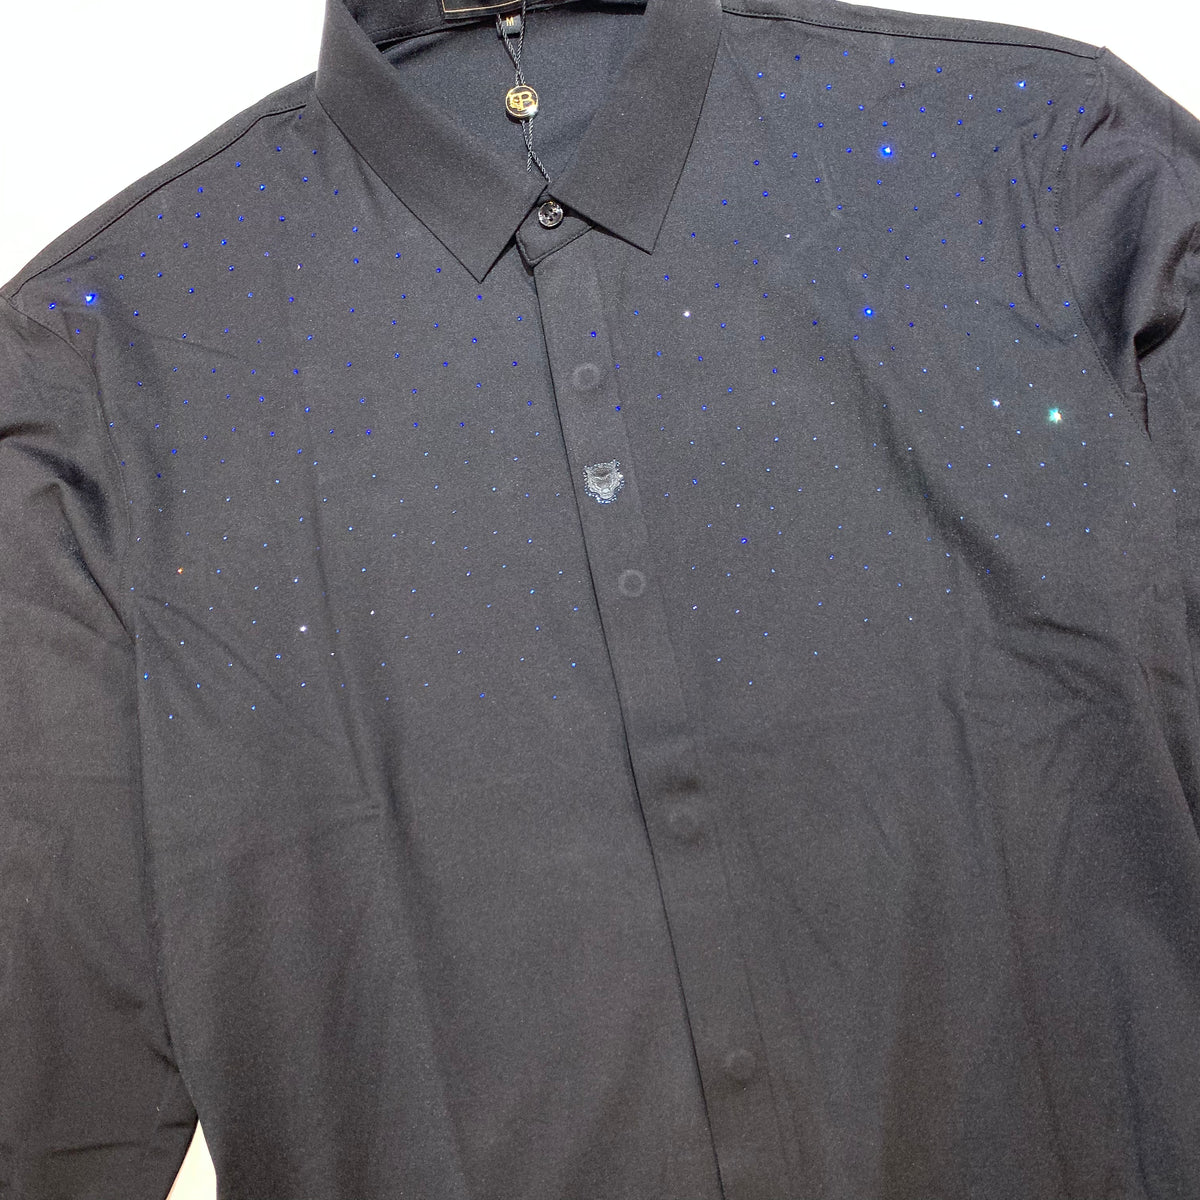 Barocco Black Blue Crystal Sparkle Button-Up Shirt - Dudes Boutique